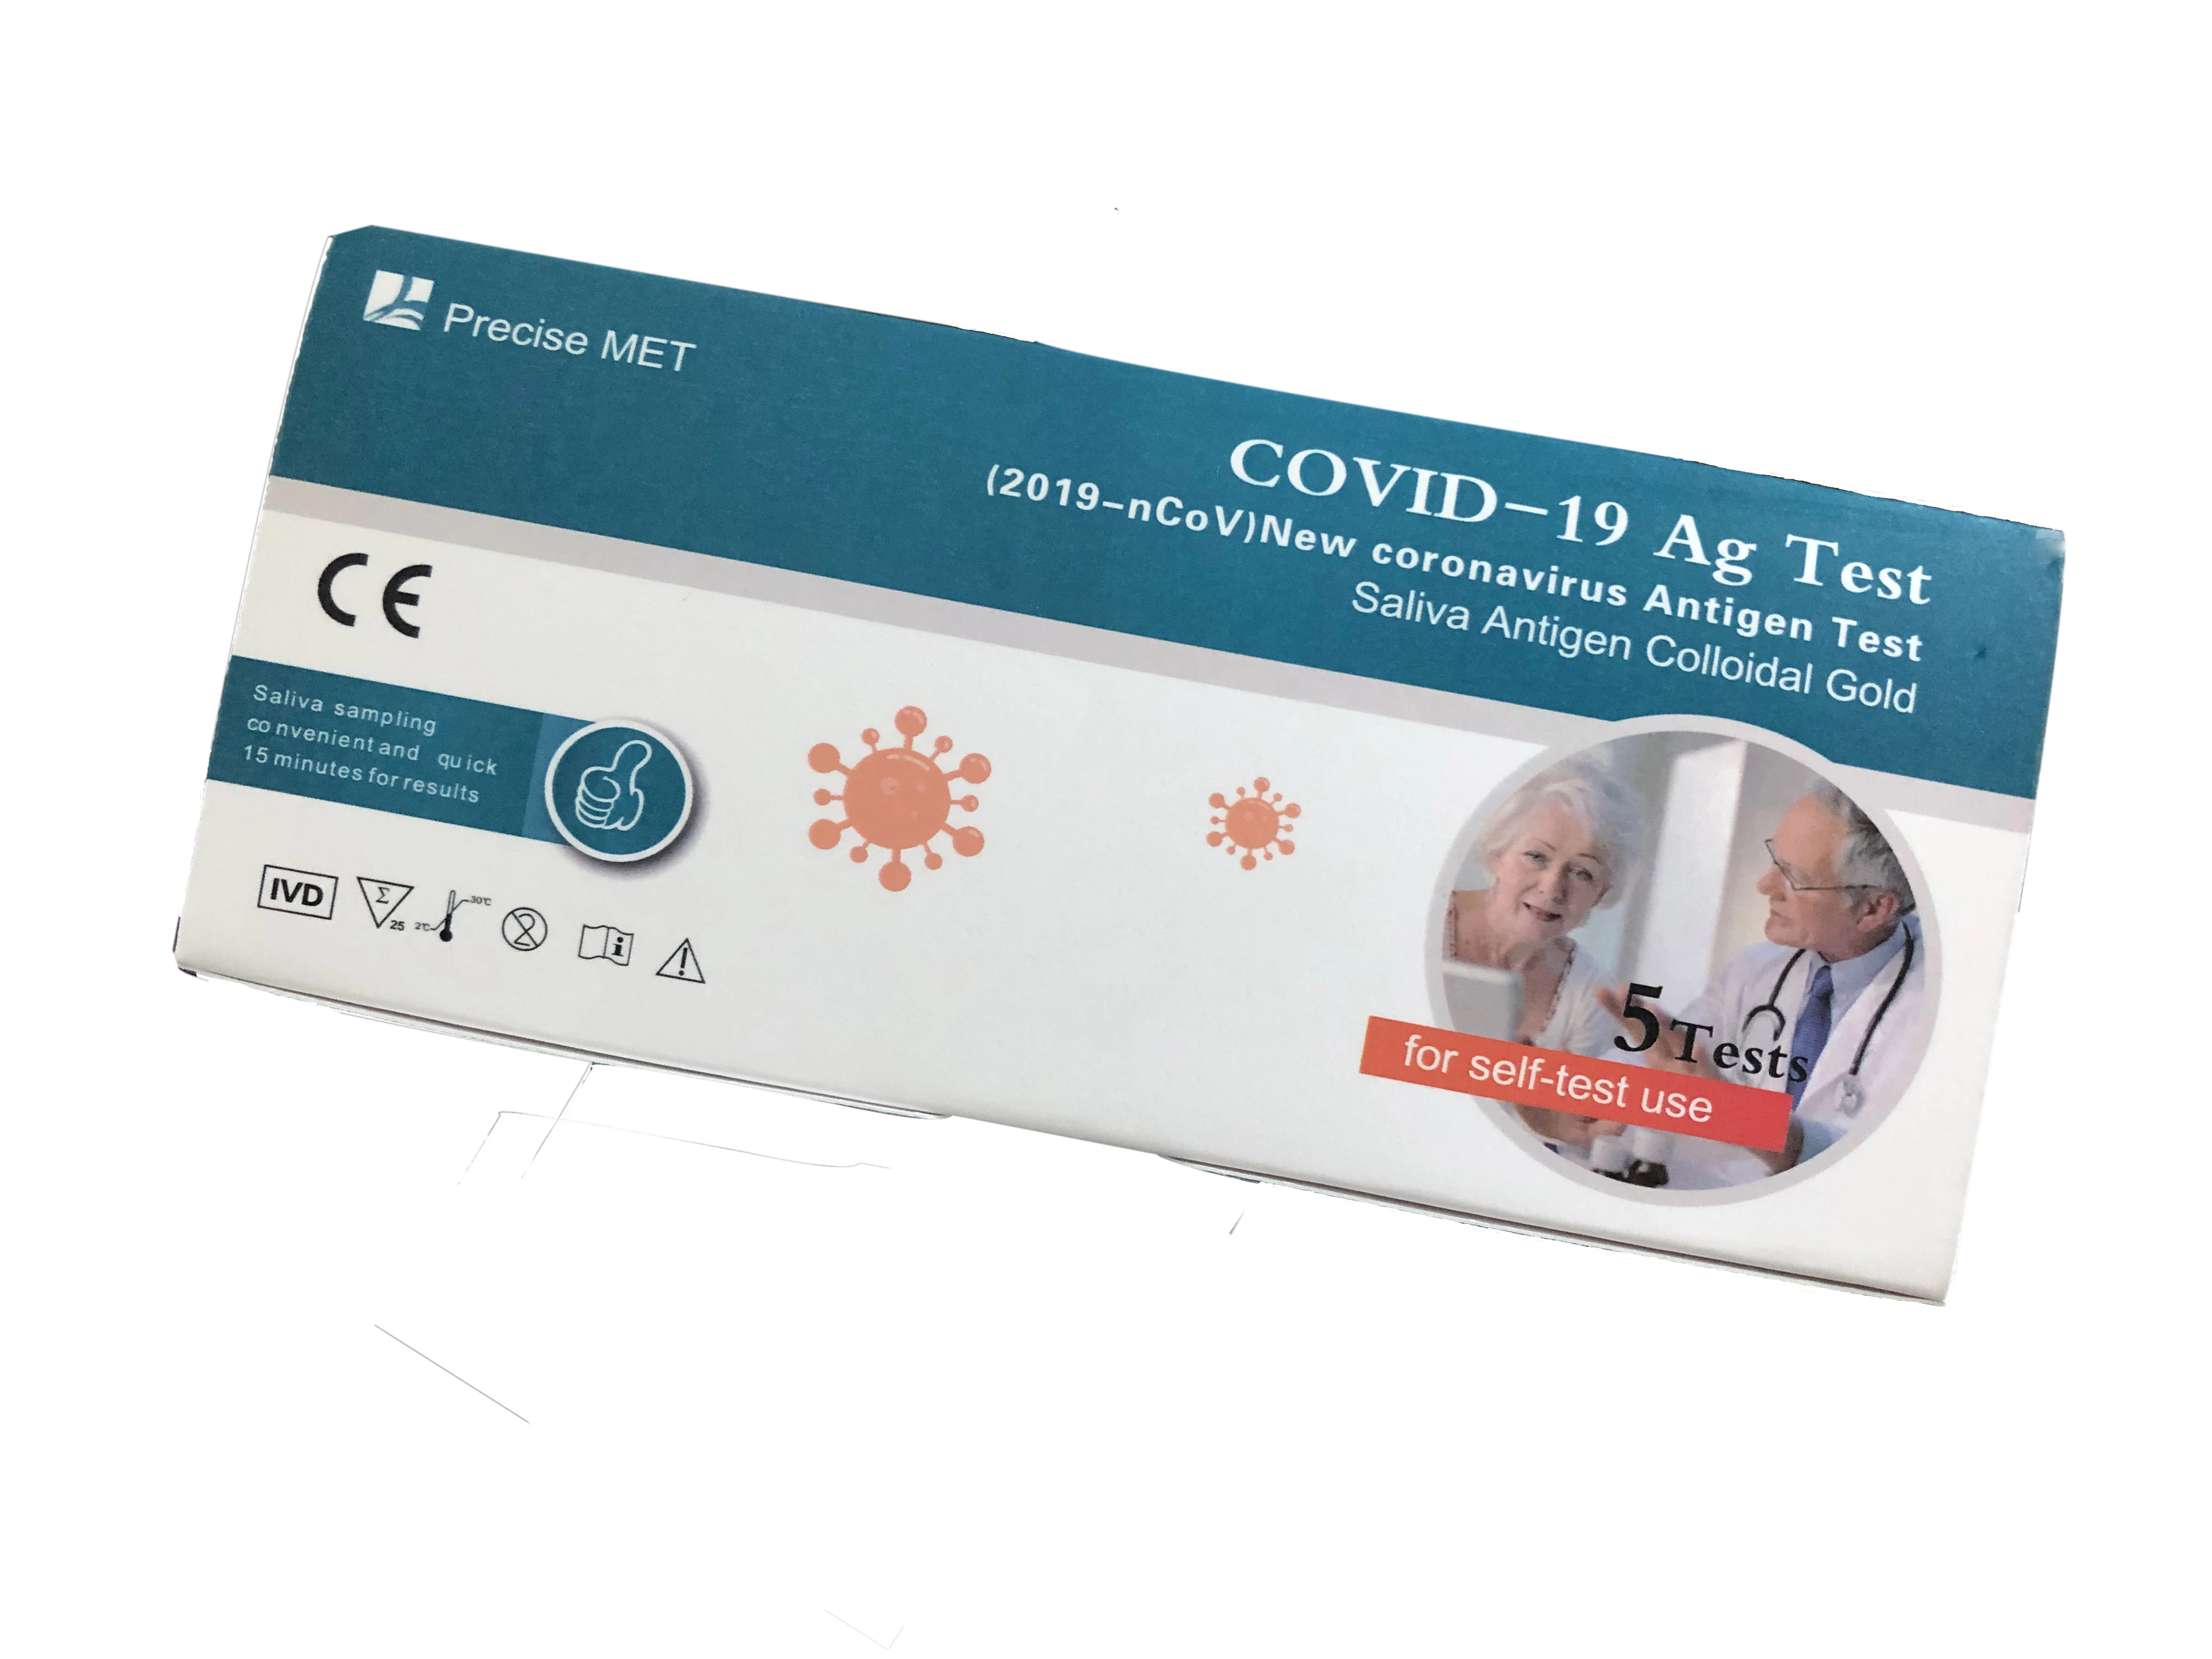 10 test/Test antigene saliva (oro colloidale)